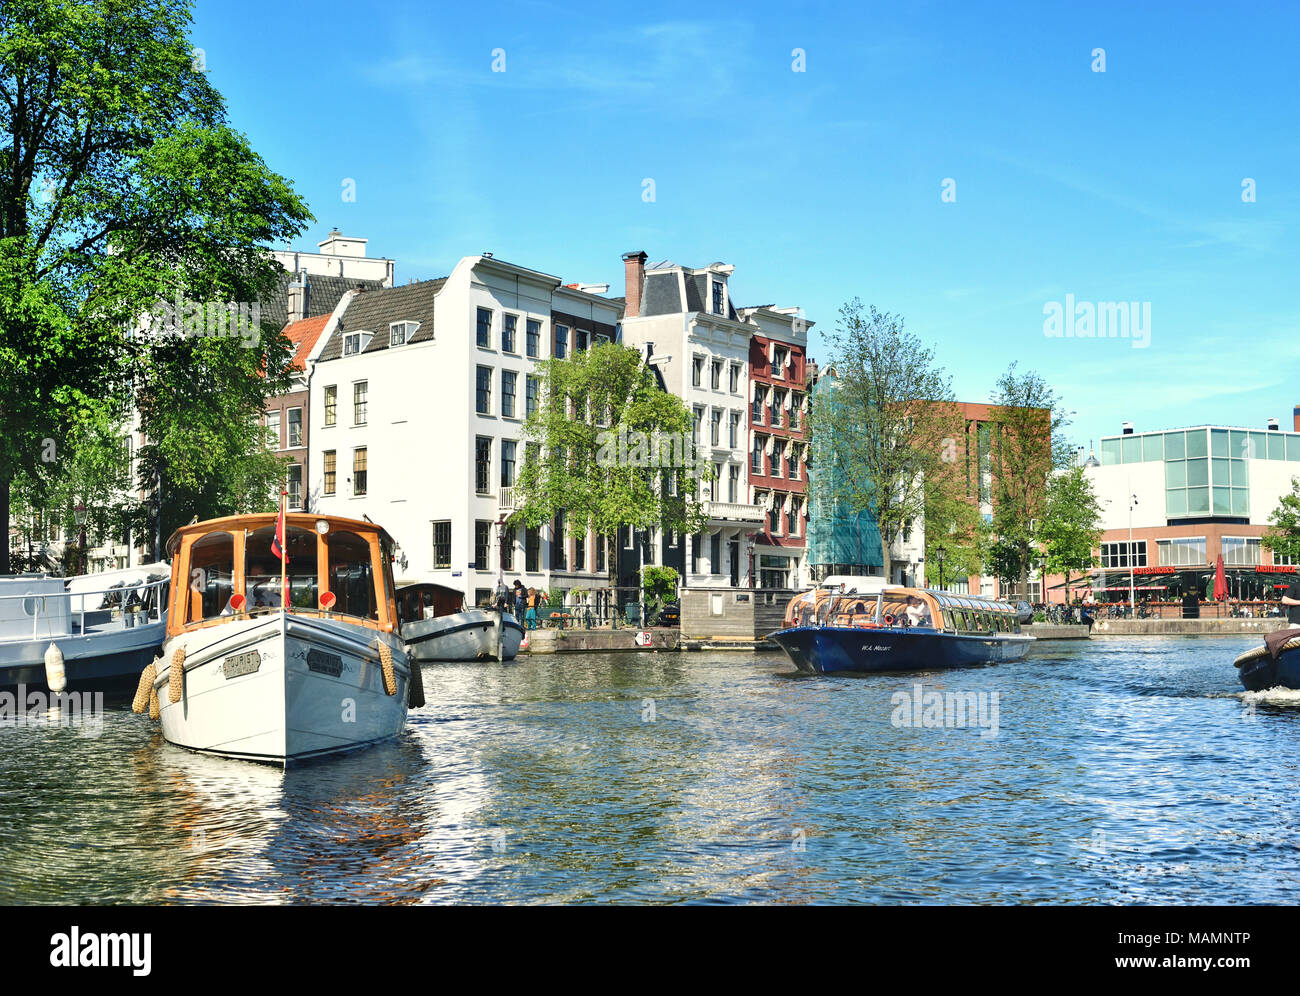 Canal o gracht in Amsterdam City. Fiume Amstel scena con barche e vecchie case. Foto Stock